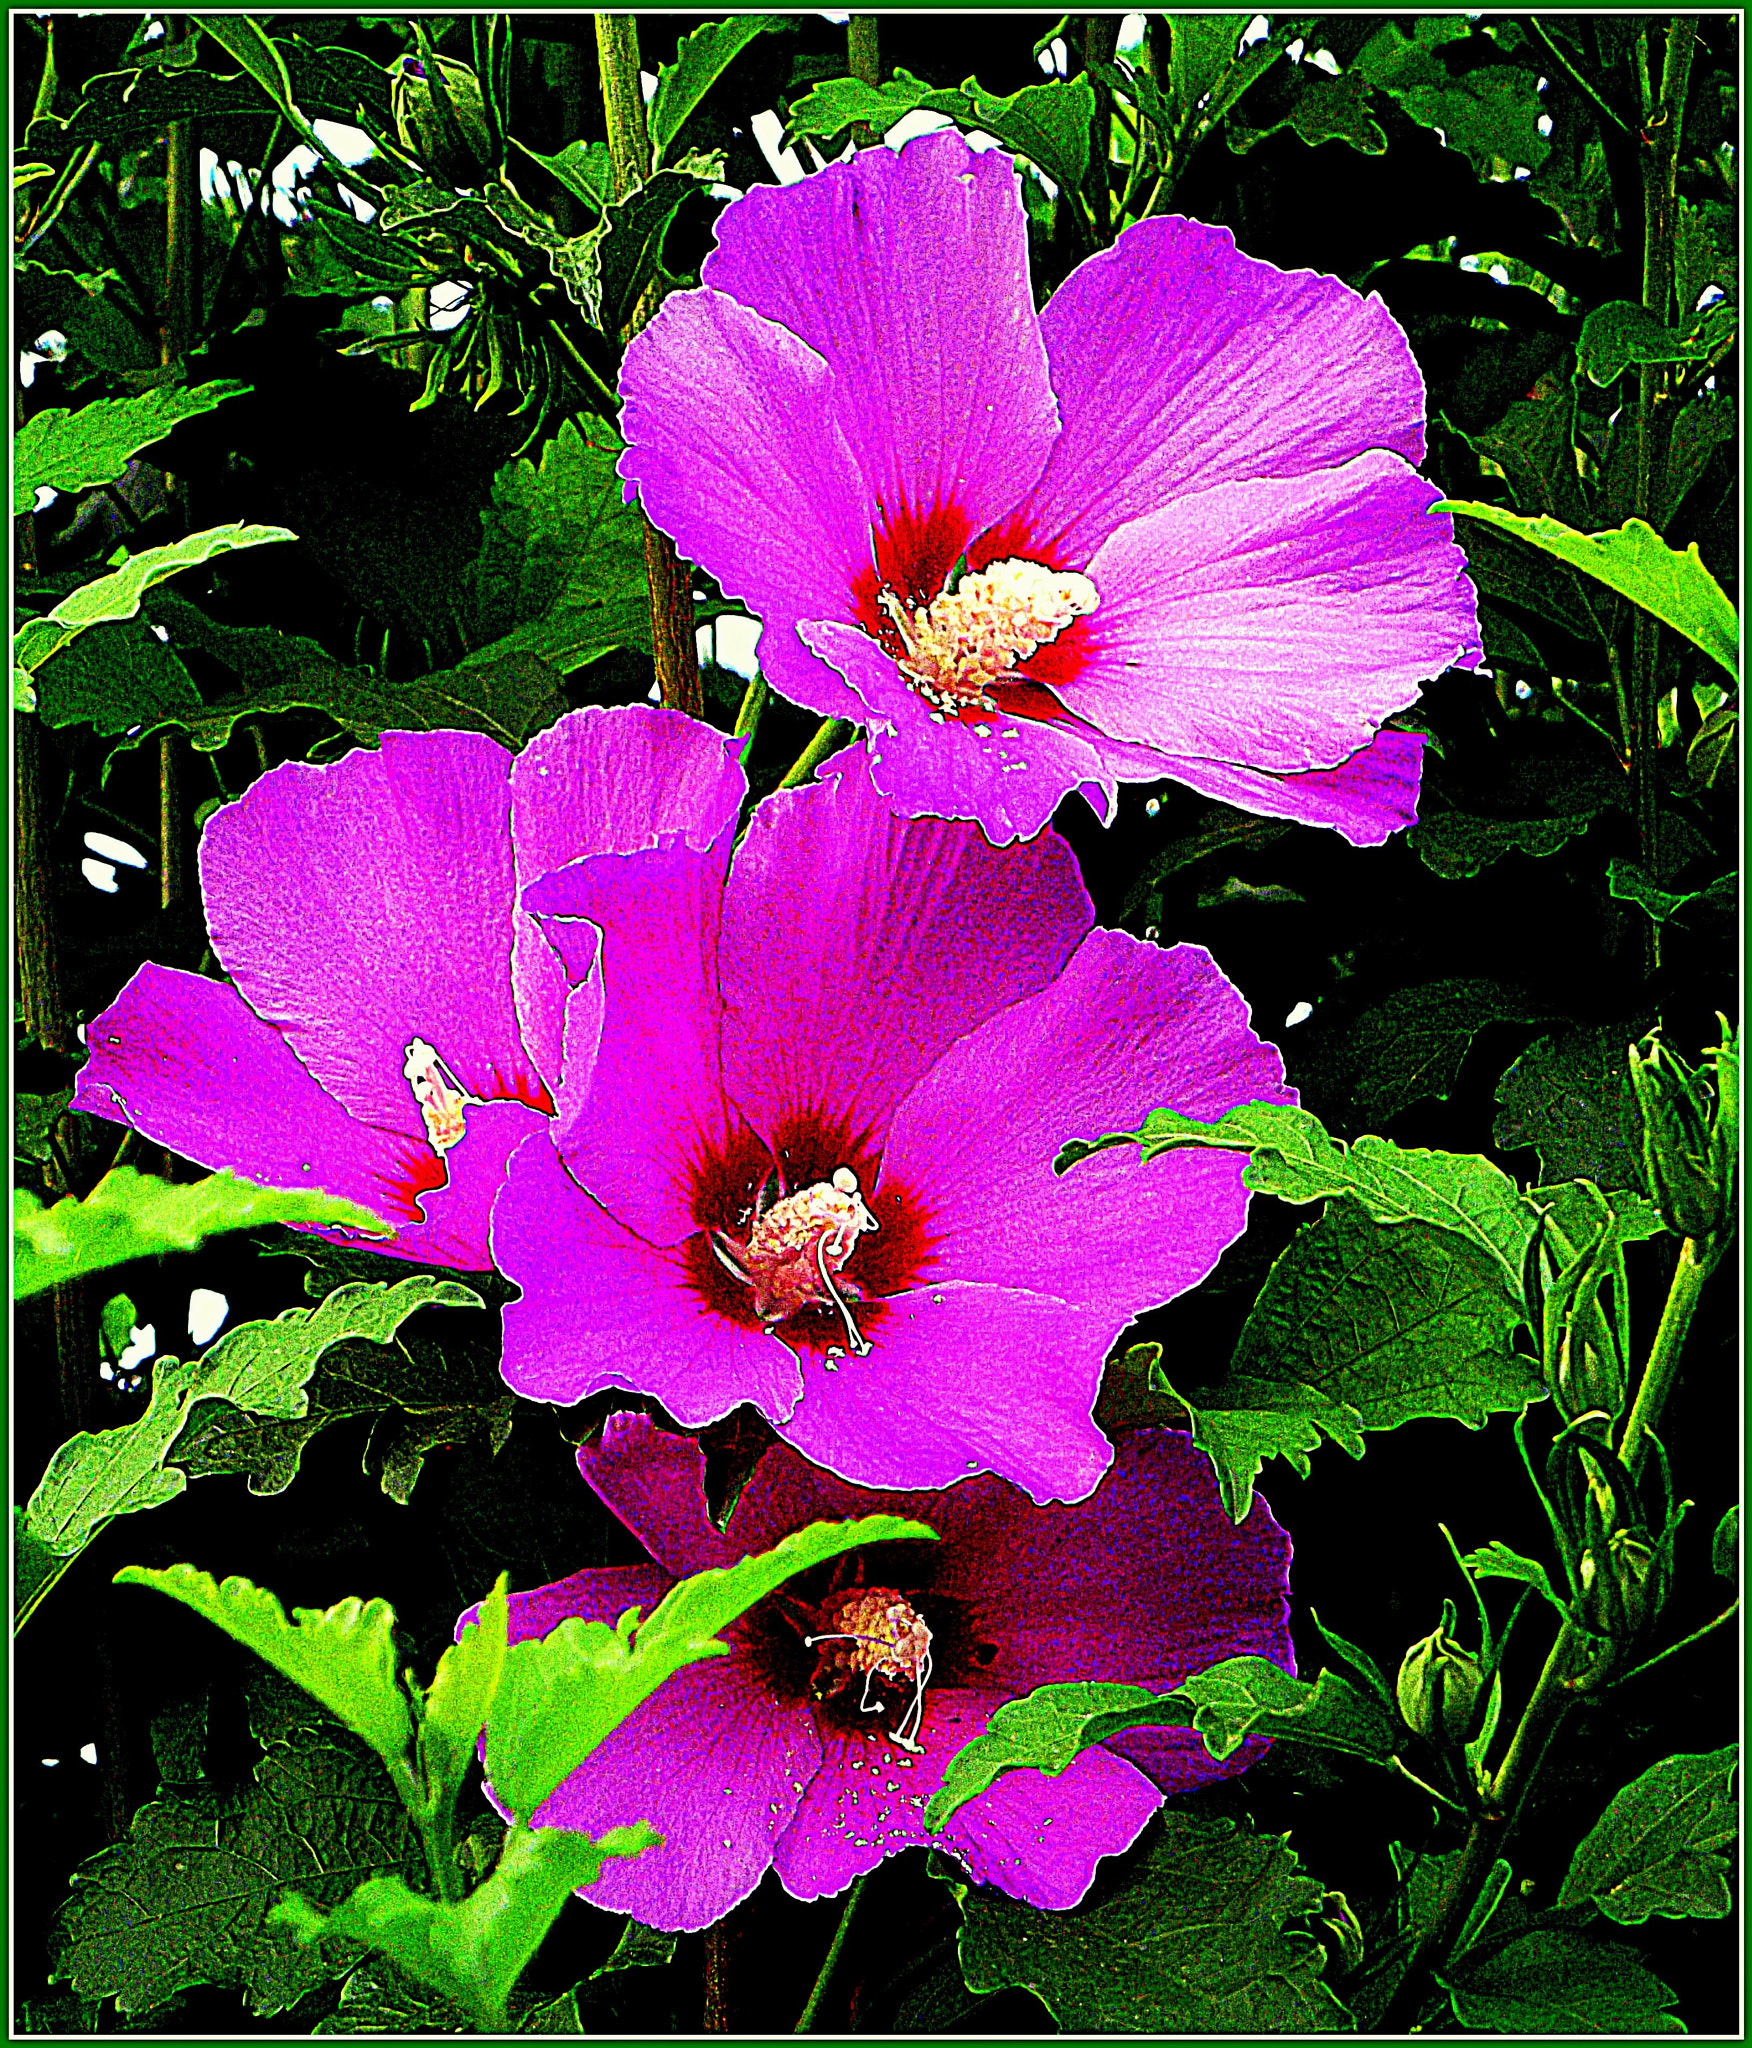 Fujifilm FinePix JX250 sample photo. Fiori hibiscus rosa in primo piano. photography